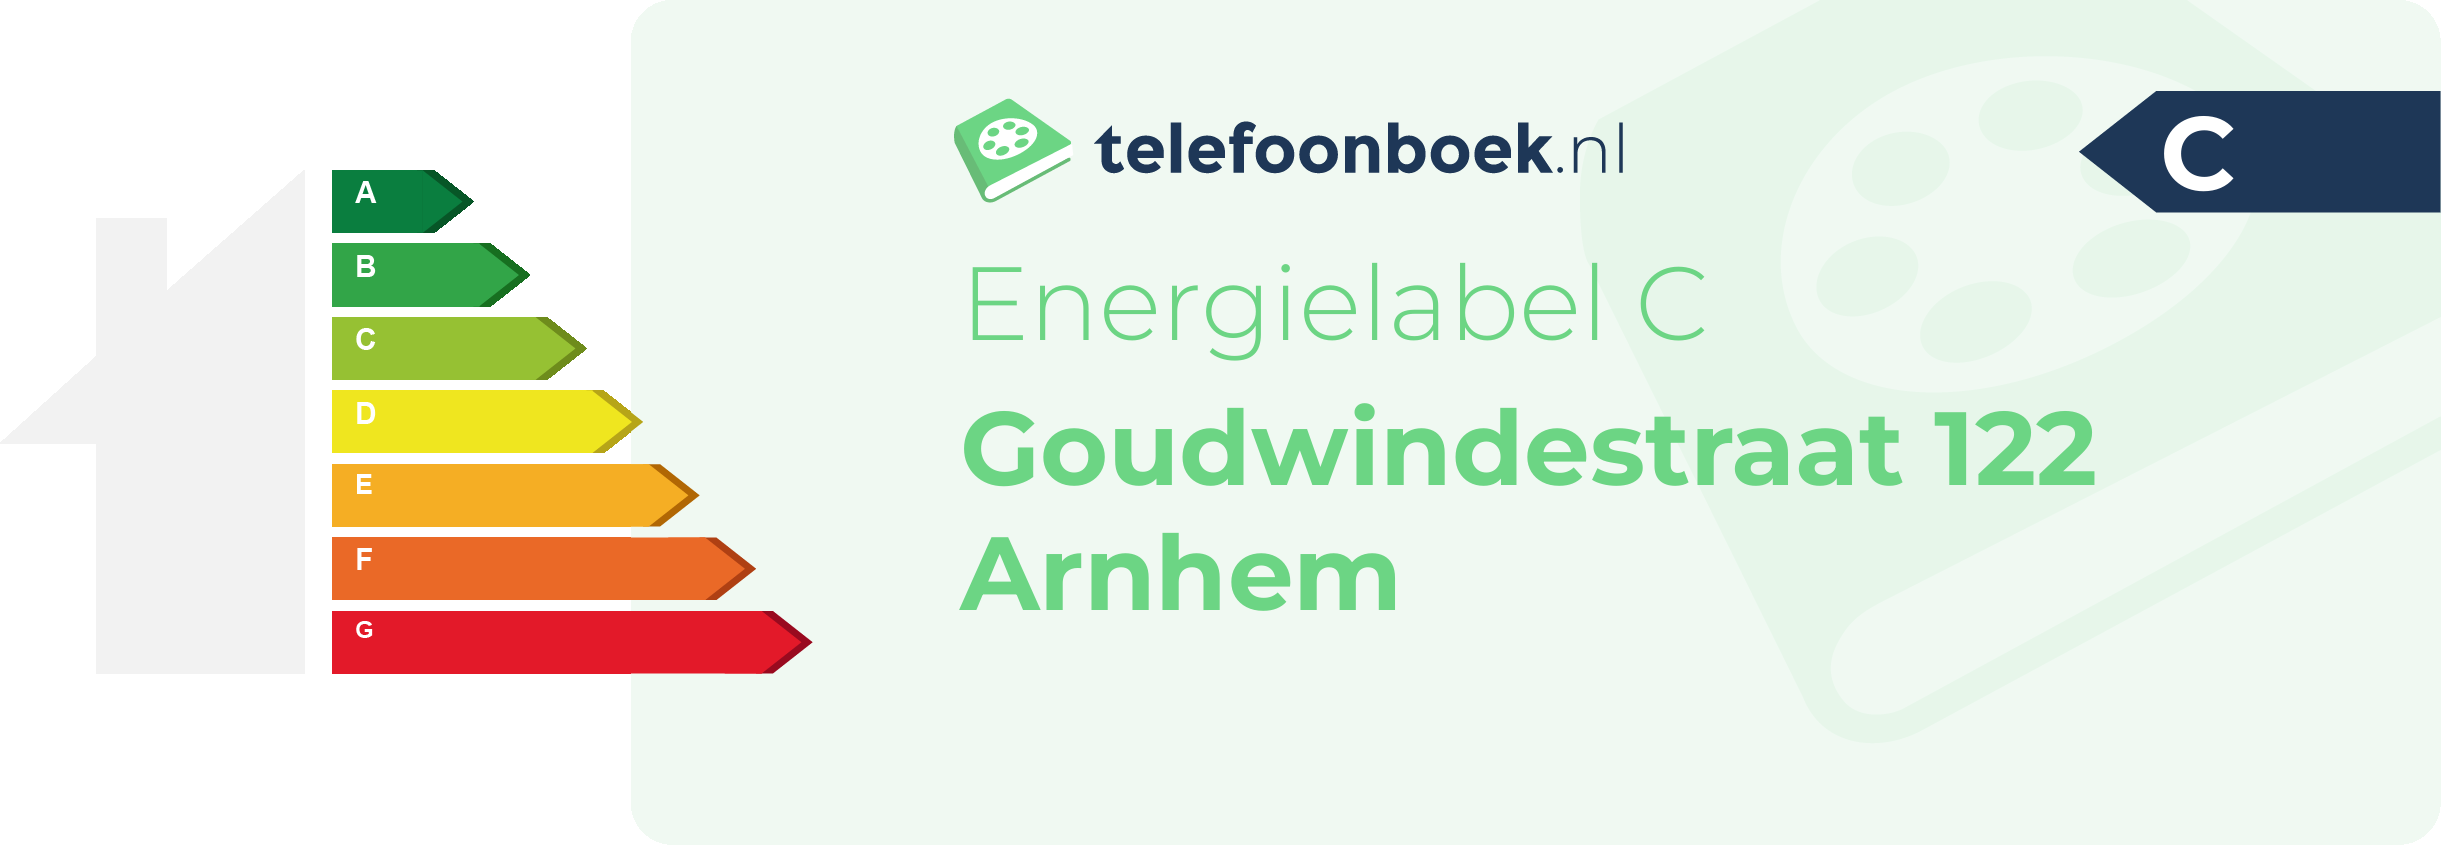 Energielabel Goudwindestraat 122 Arnhem